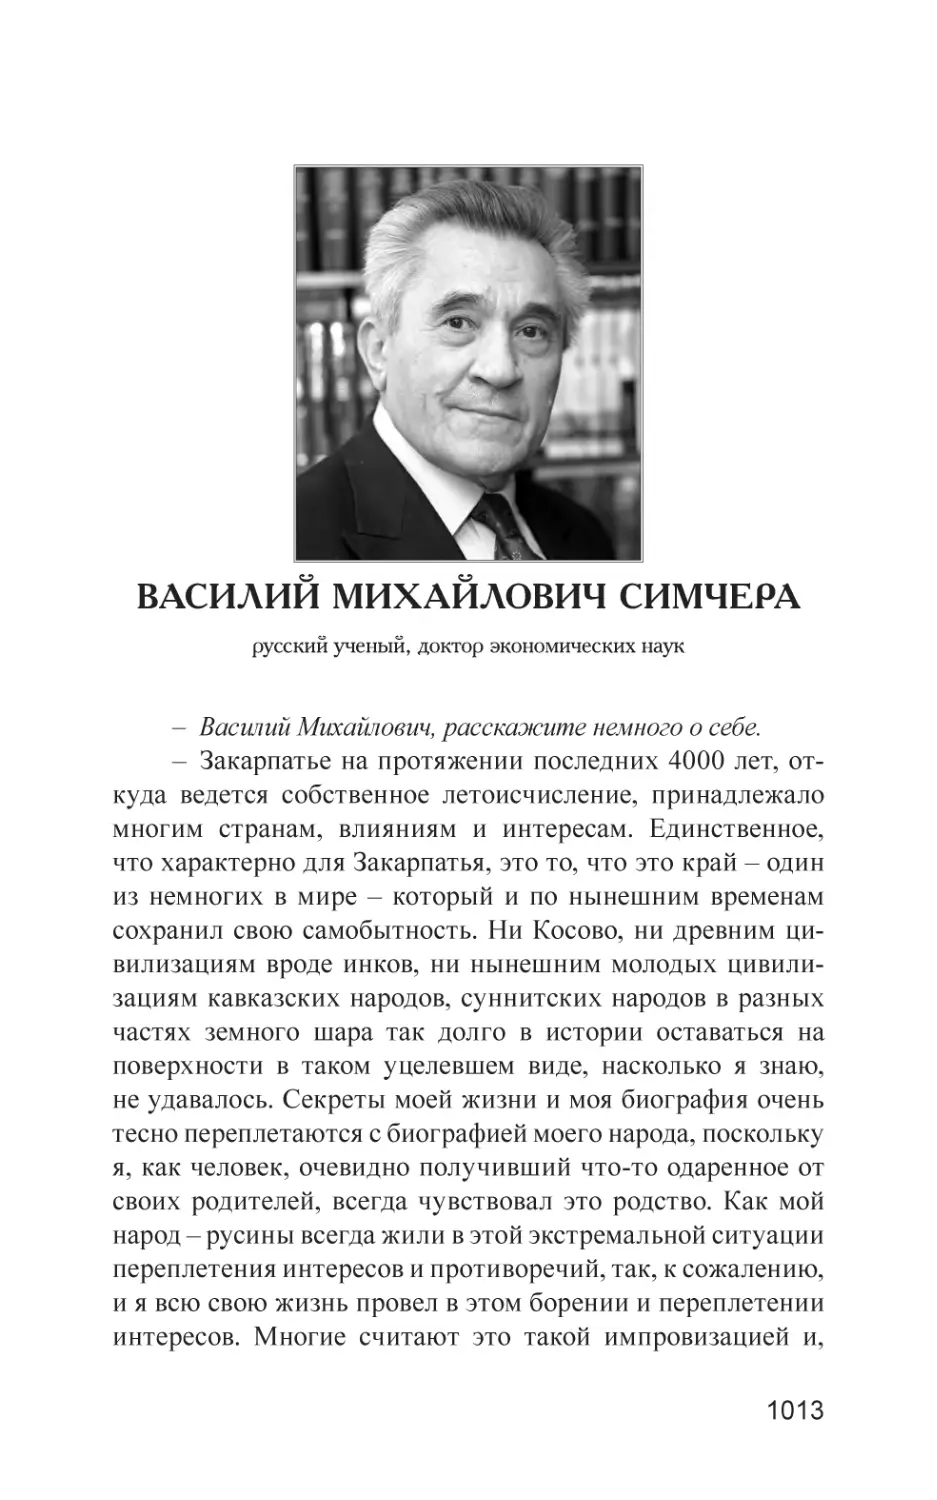 Василий Михайлович Симчера